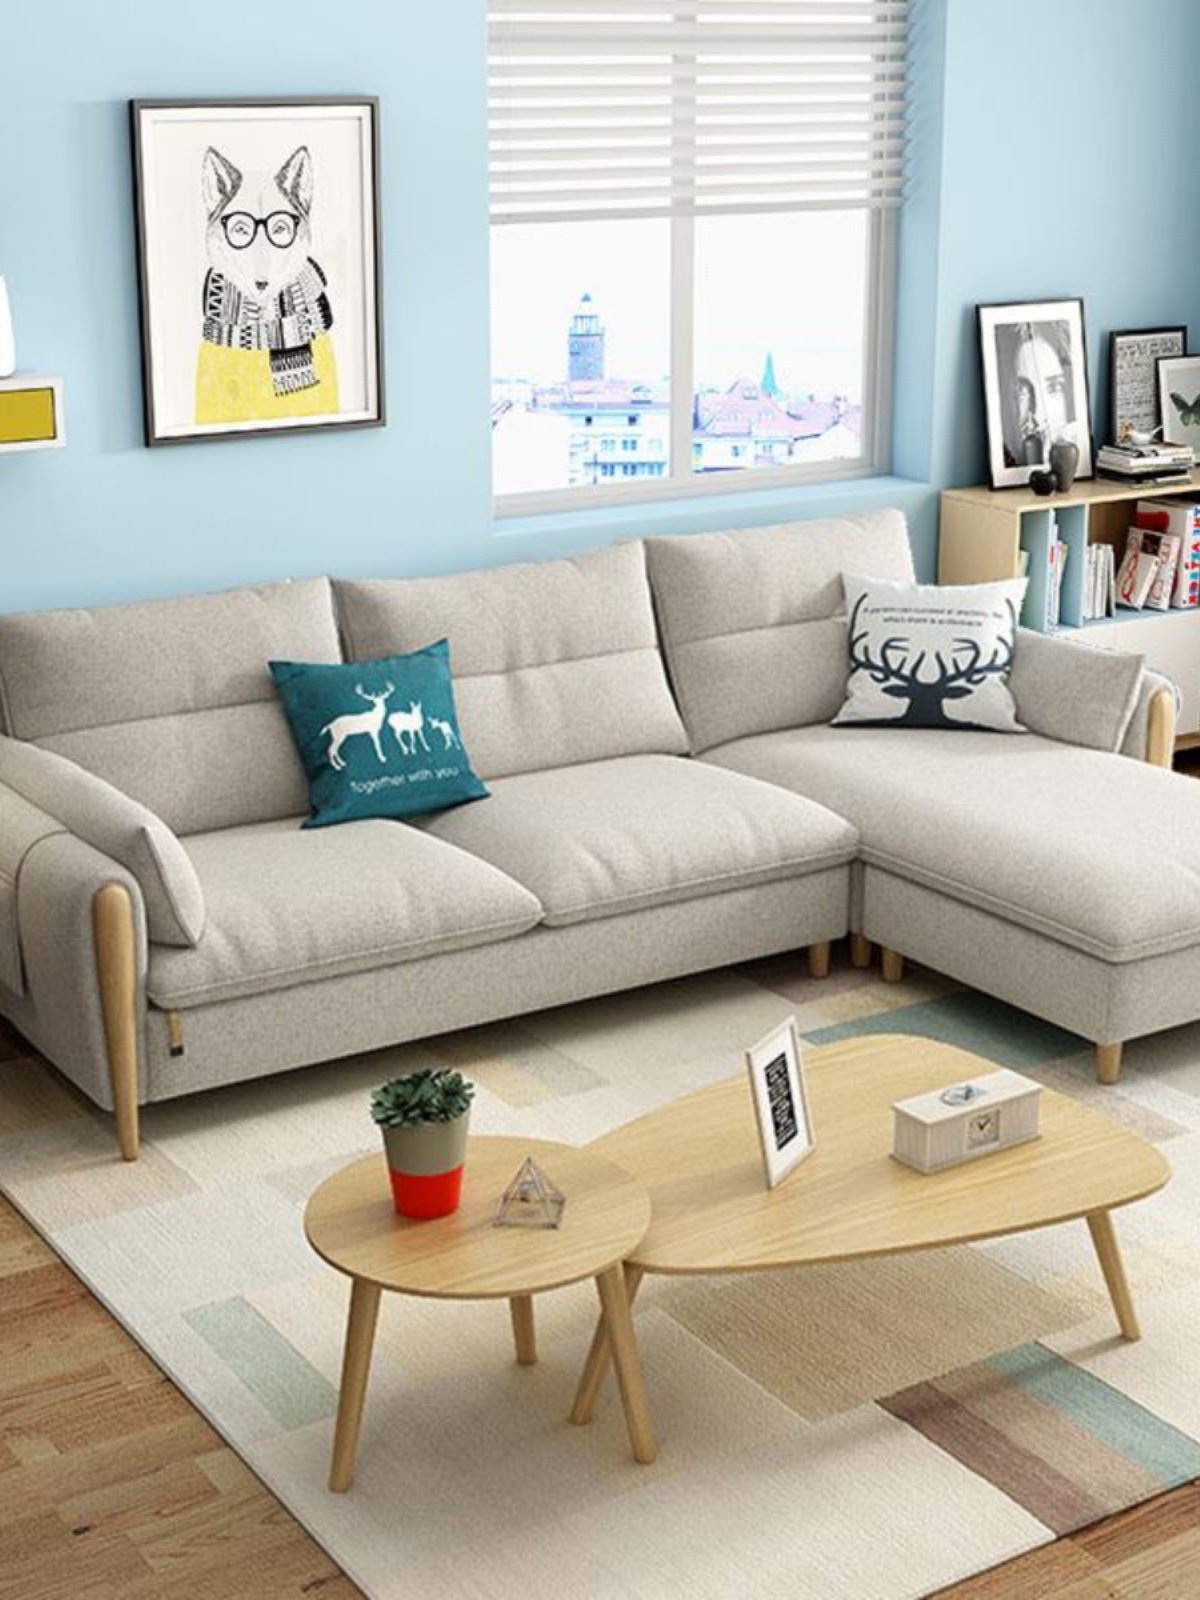 促北欧现代简约中小户型转角布艺拆洗乳胶卧室公寓三人沙发组合品